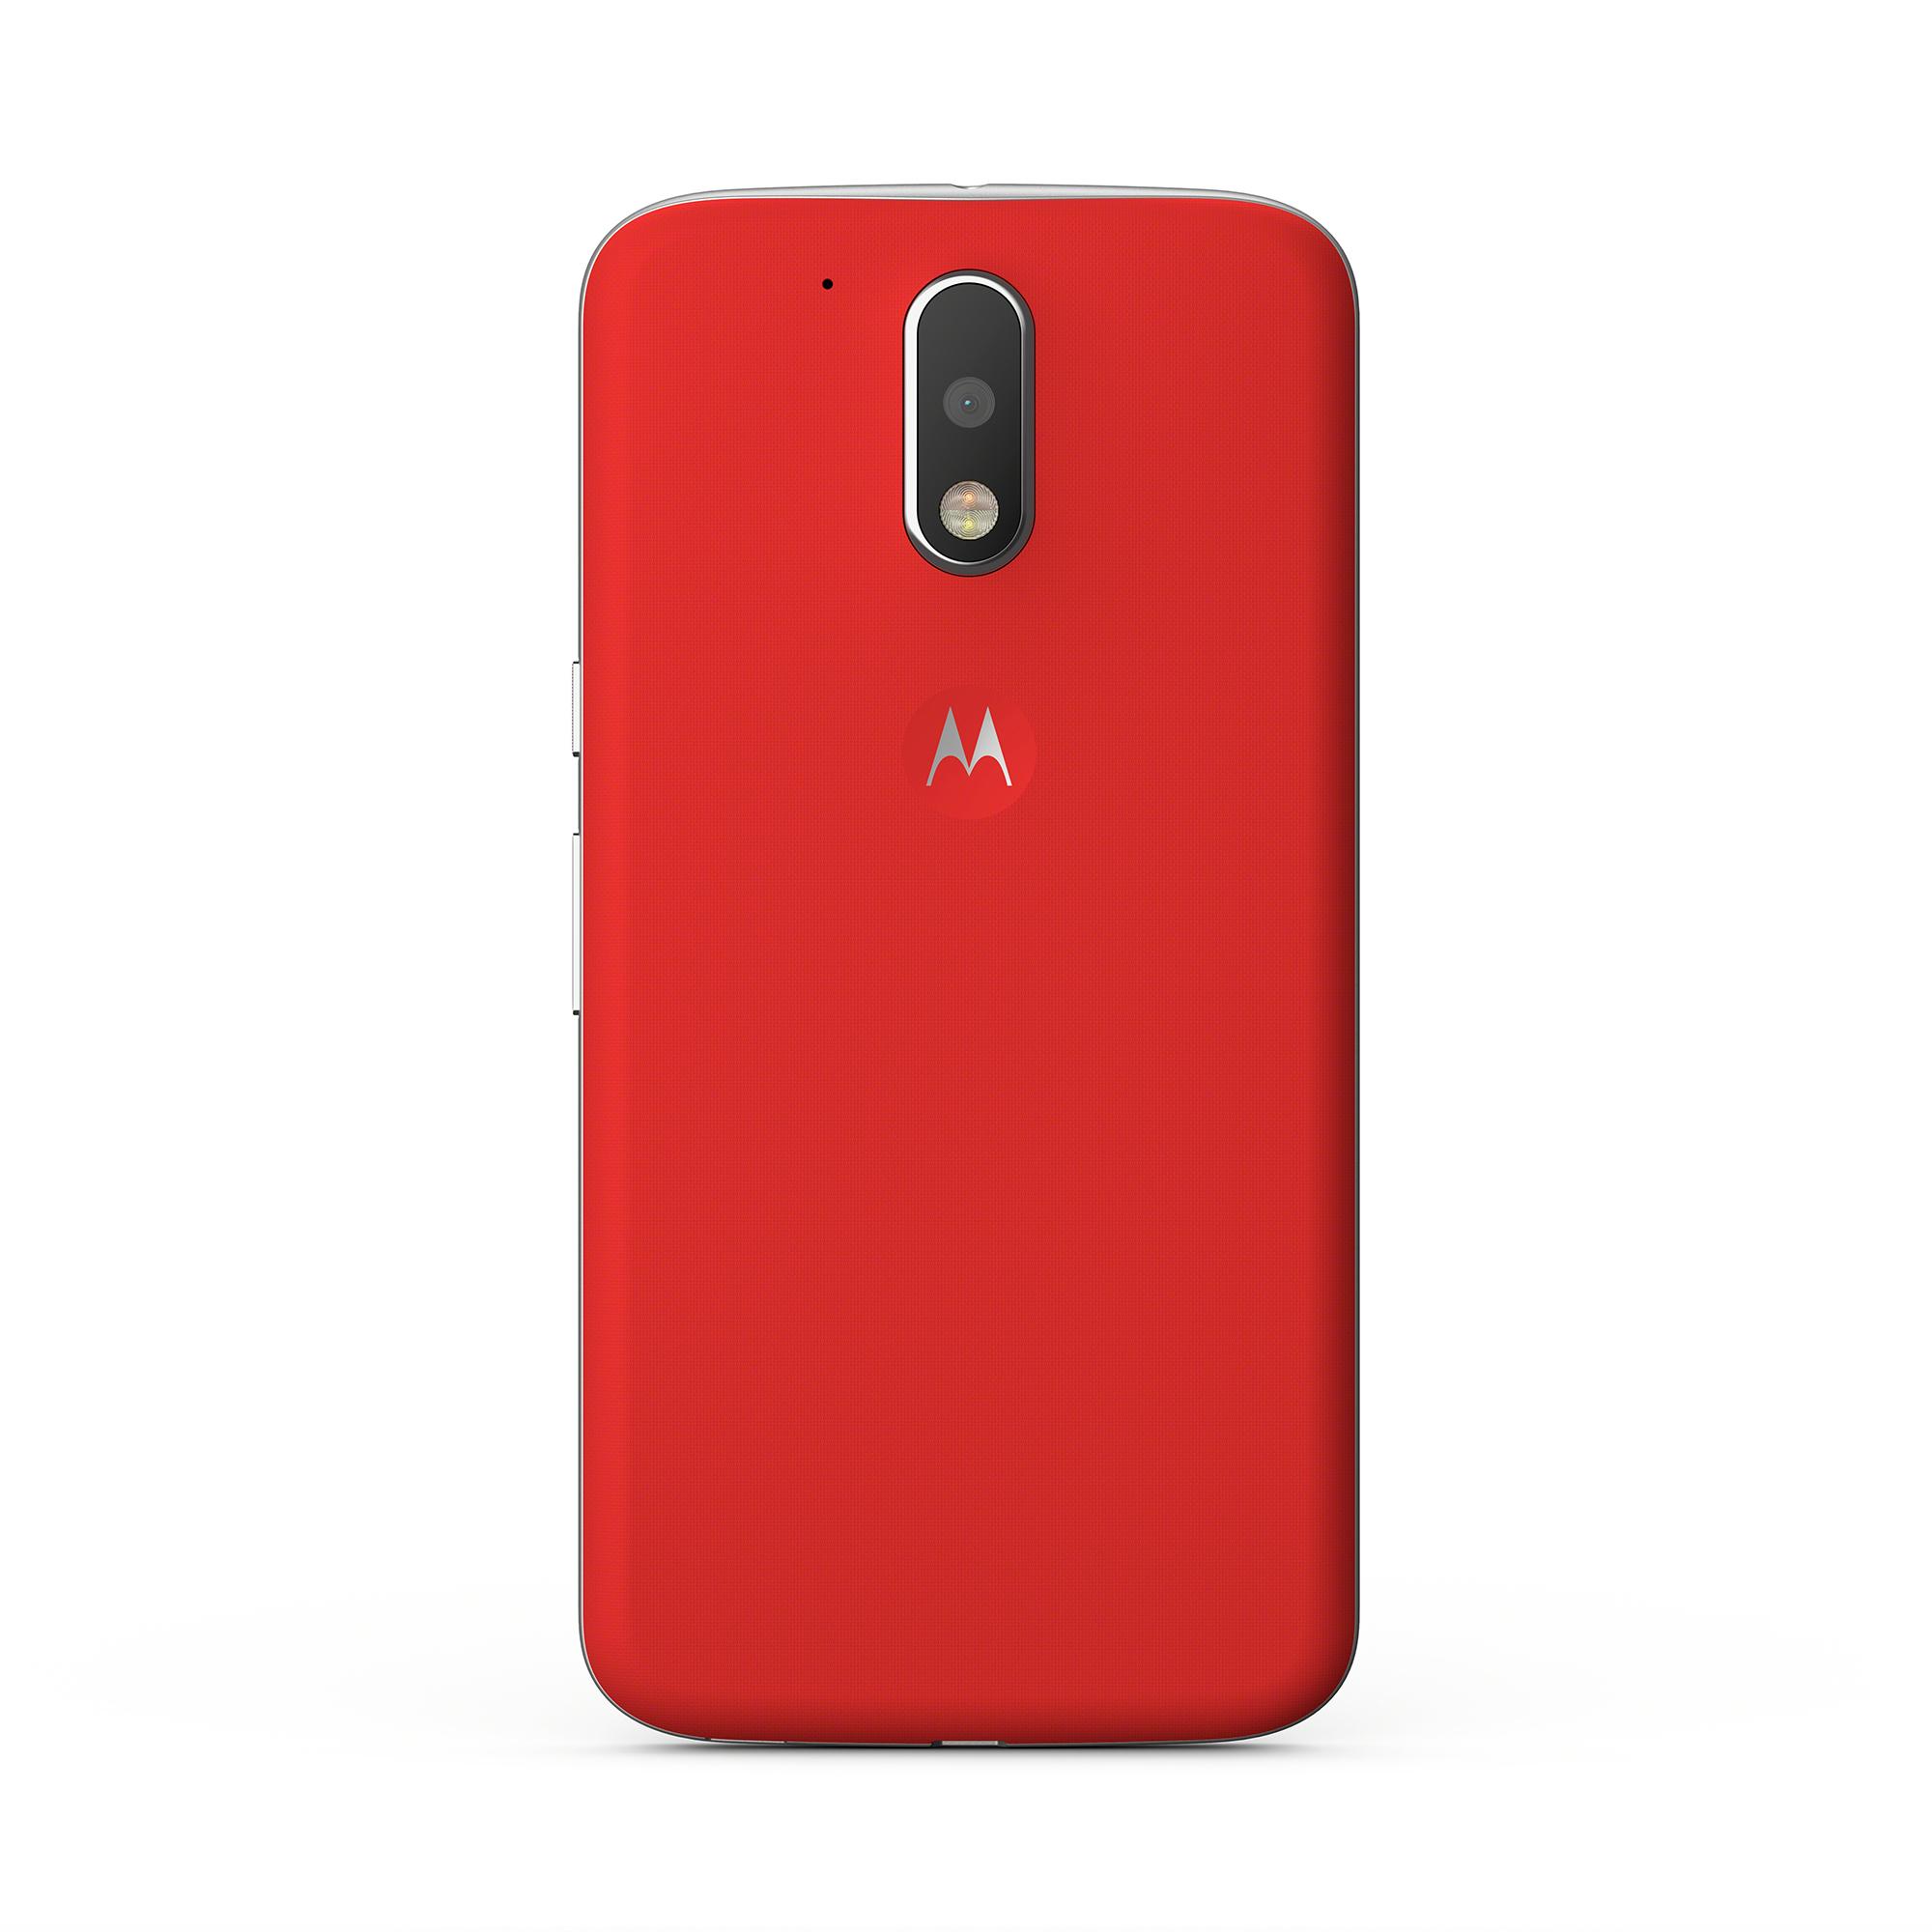 Motorola Moto G4 rojo